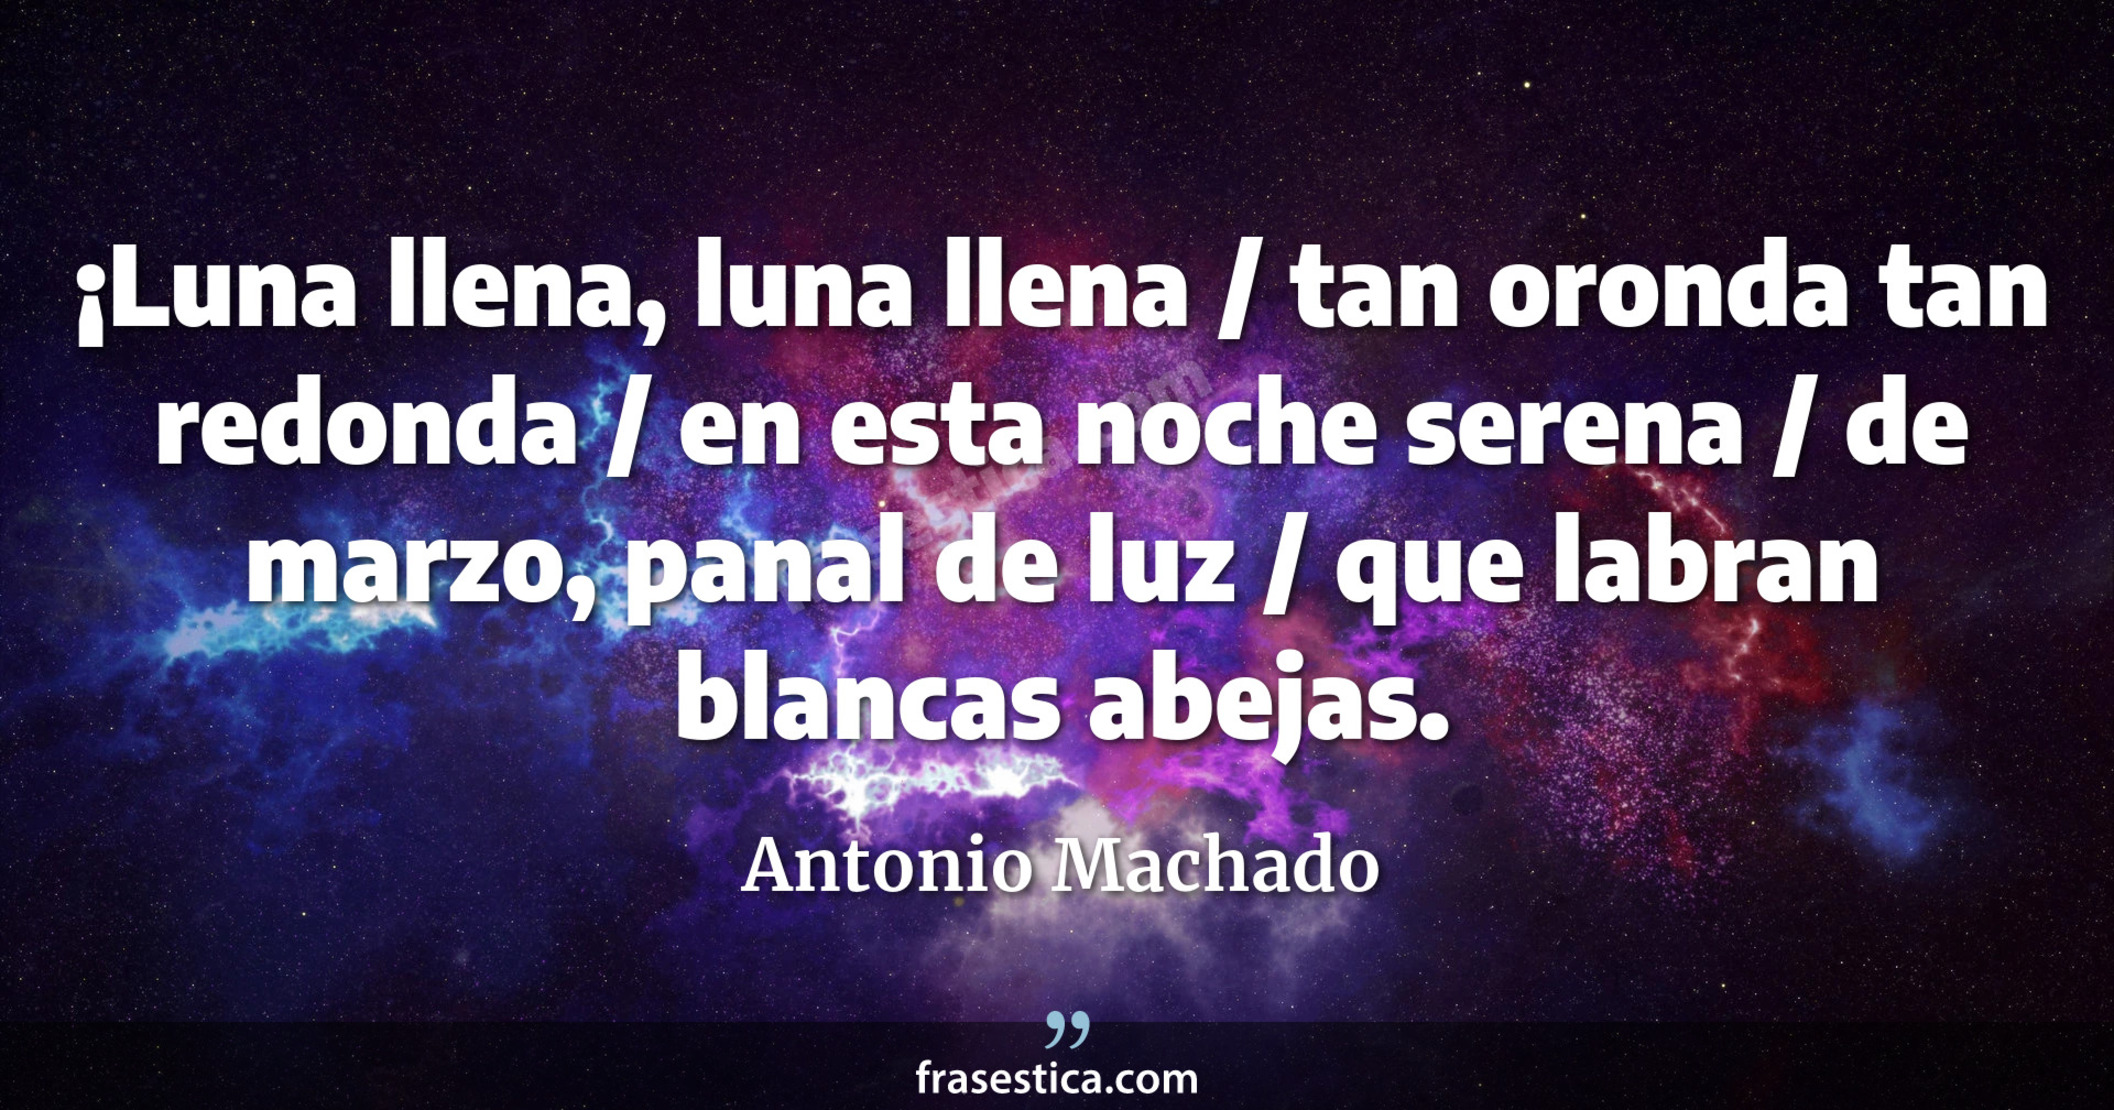 ¡Luna llena, luna llena / tan oronda tan redonda / en esta noche serena / de marzo, panal de luz / que labran blancas abejas. - Antonio Machado